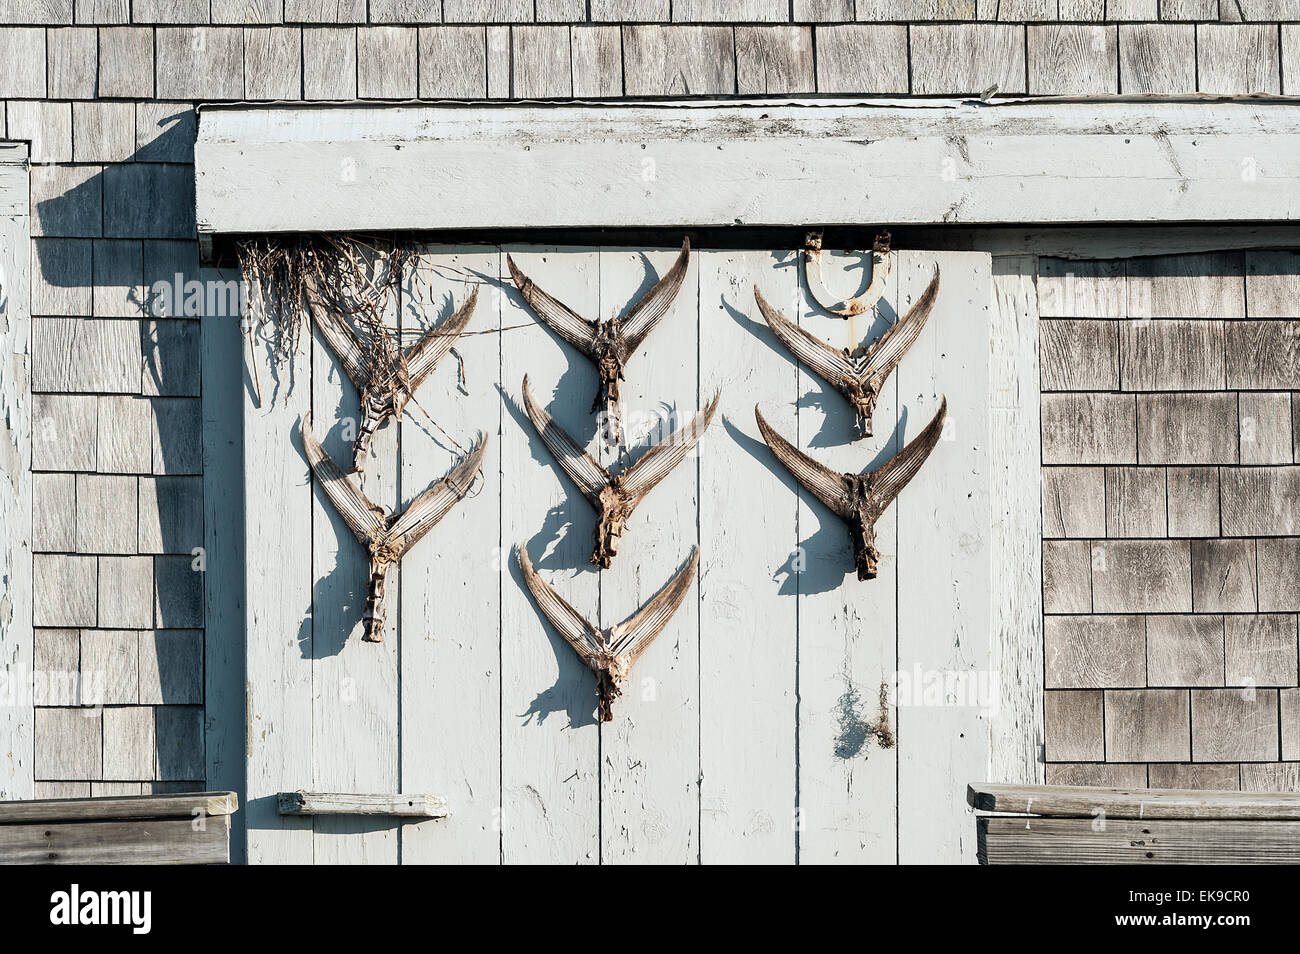 Capanna rustica con coda di pesce dispay sullo sportello, Cape Cod, Massachusetts, STATI UNITI D'AMERICA Foto Stock